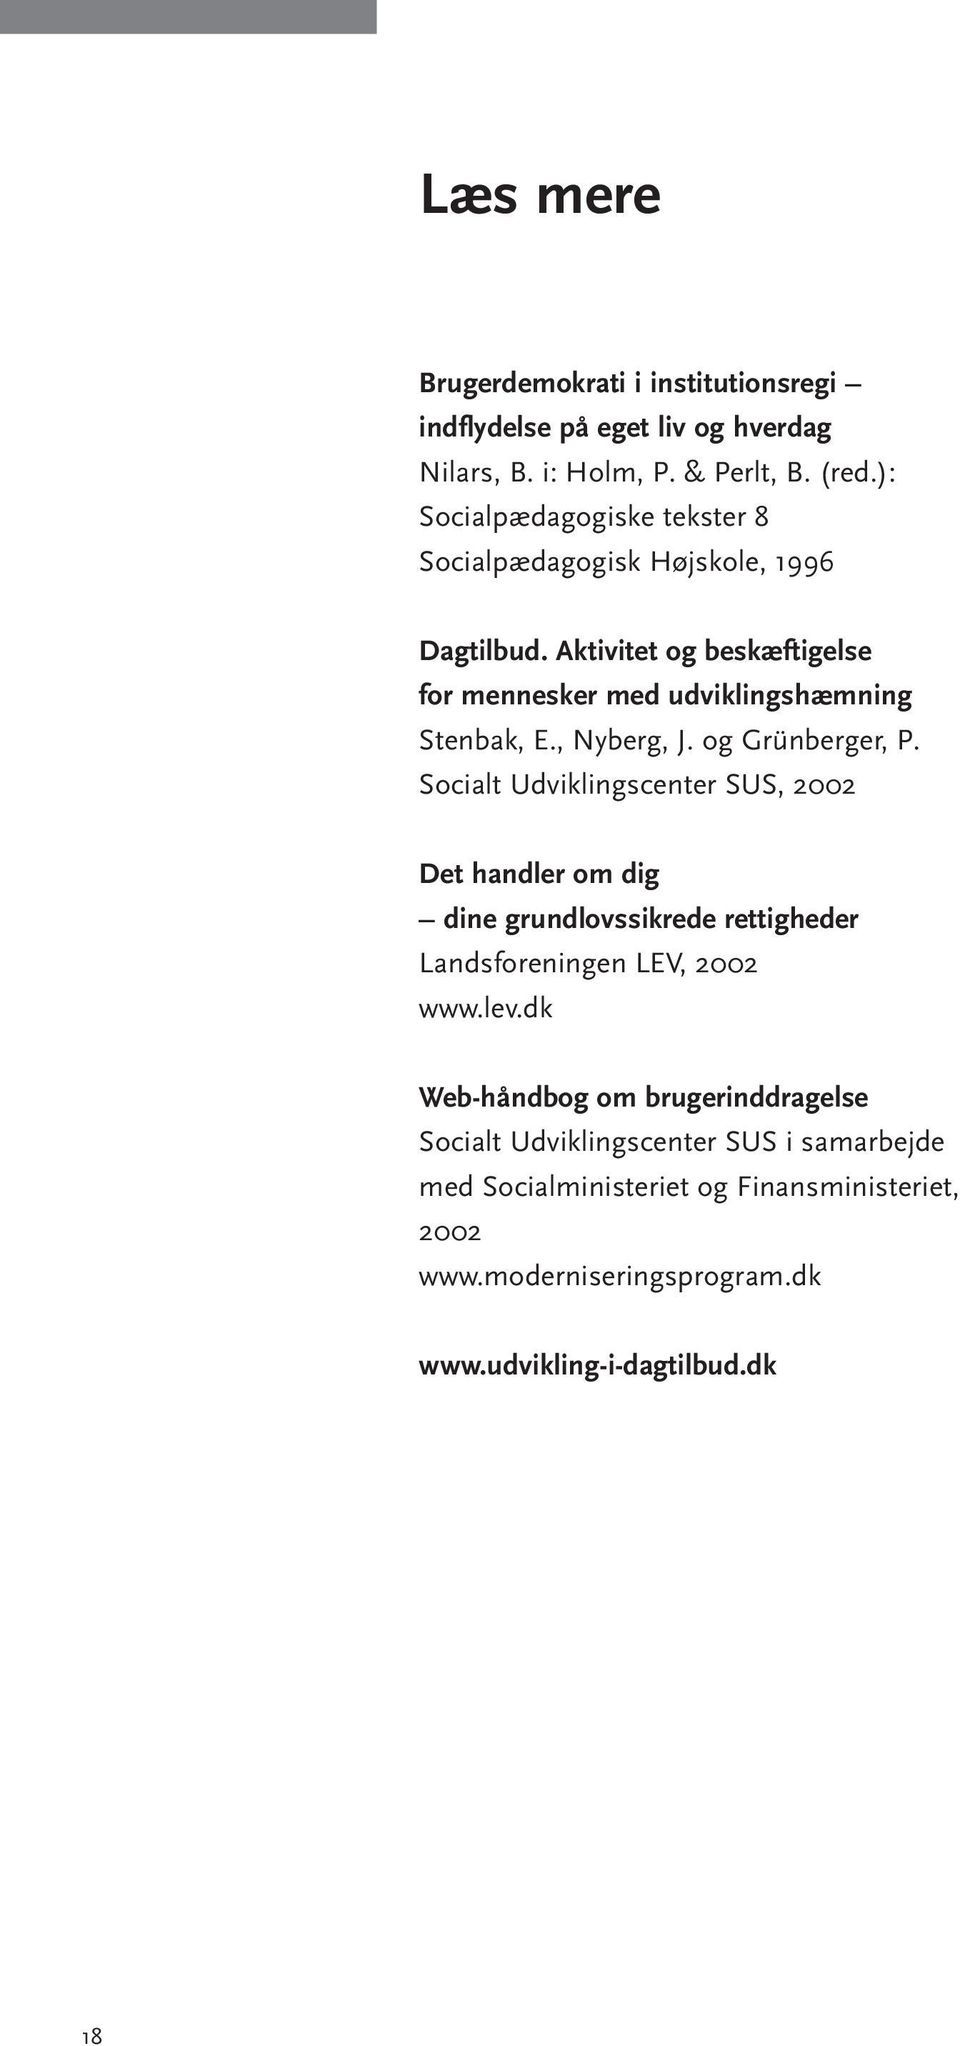 , Nyberg, J. og Grünberger, P. Socialt Udviklingscenter SUS, 2002 Det handler om dig dine grundlovssikrede rettigheder Landsforeningen LEV, 2002 www.